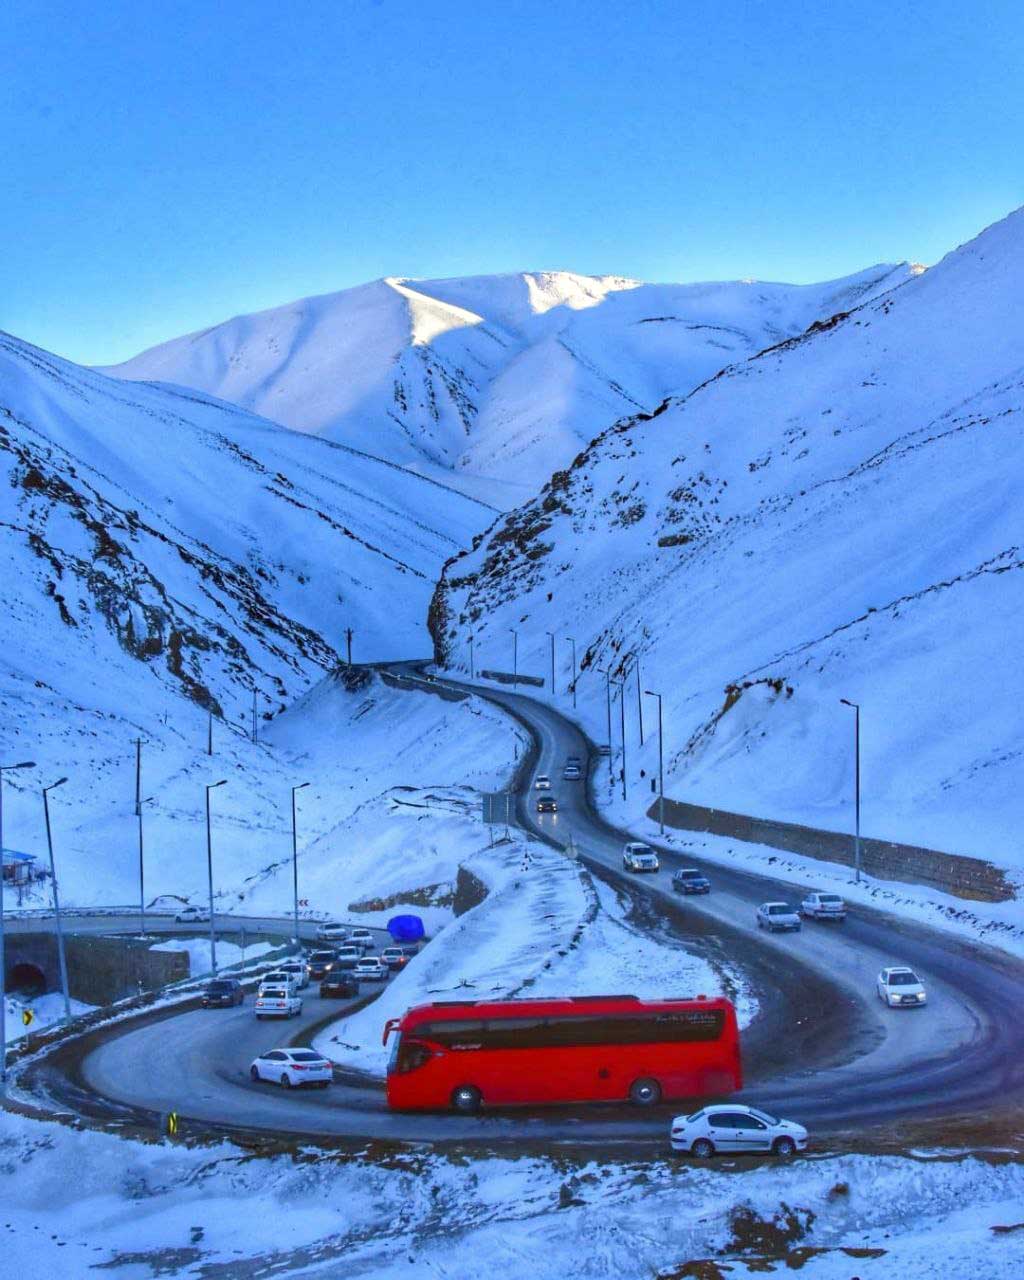 
	طبیعت زیبای زمستانی در جاده چالوس
